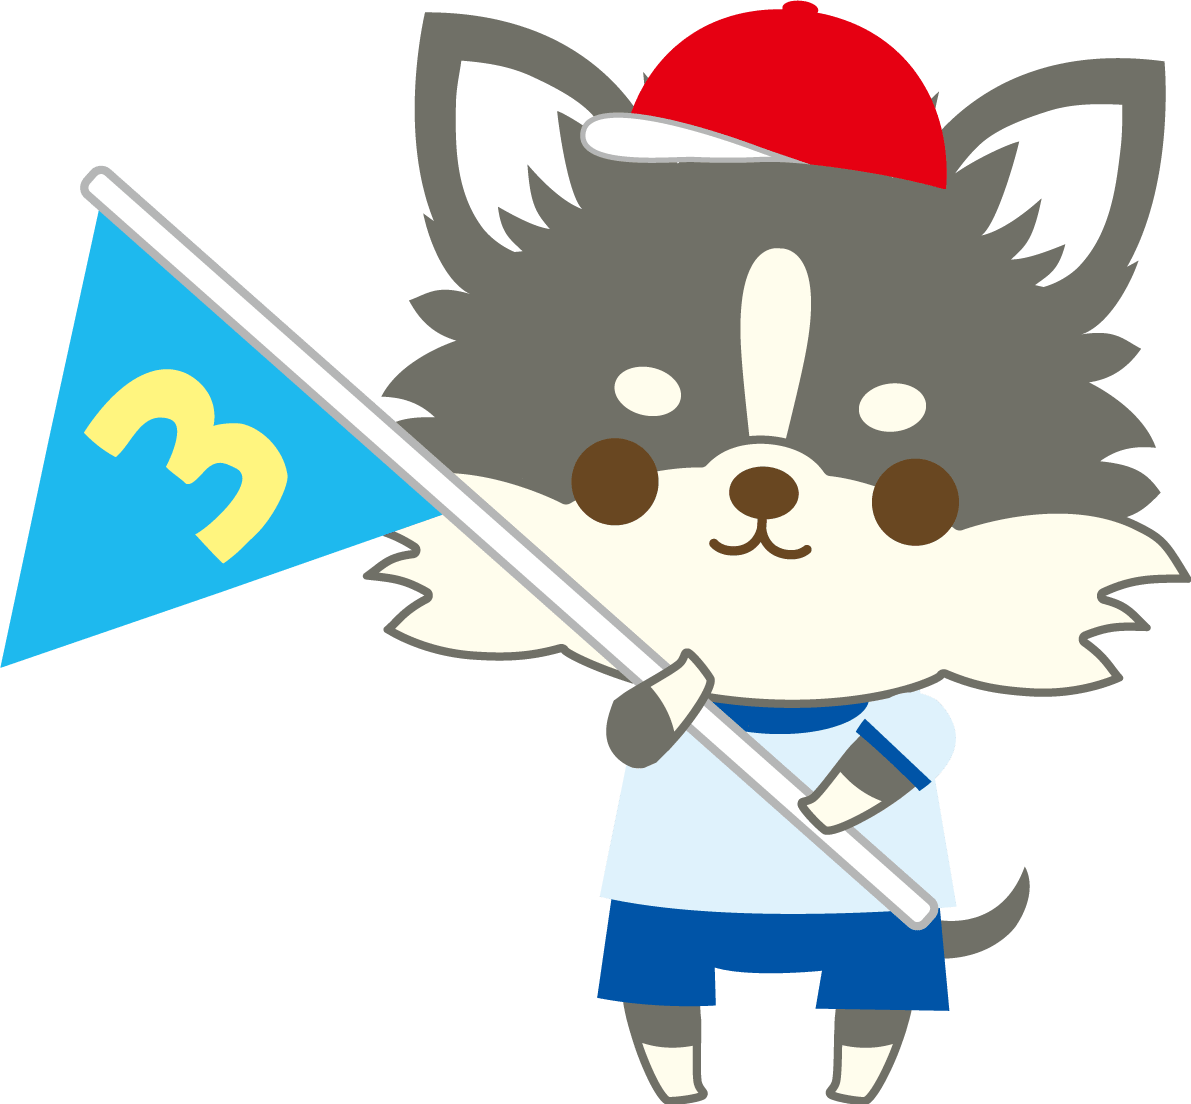 奇瓦瓦(狗)体育节(第3名旗帜)动物